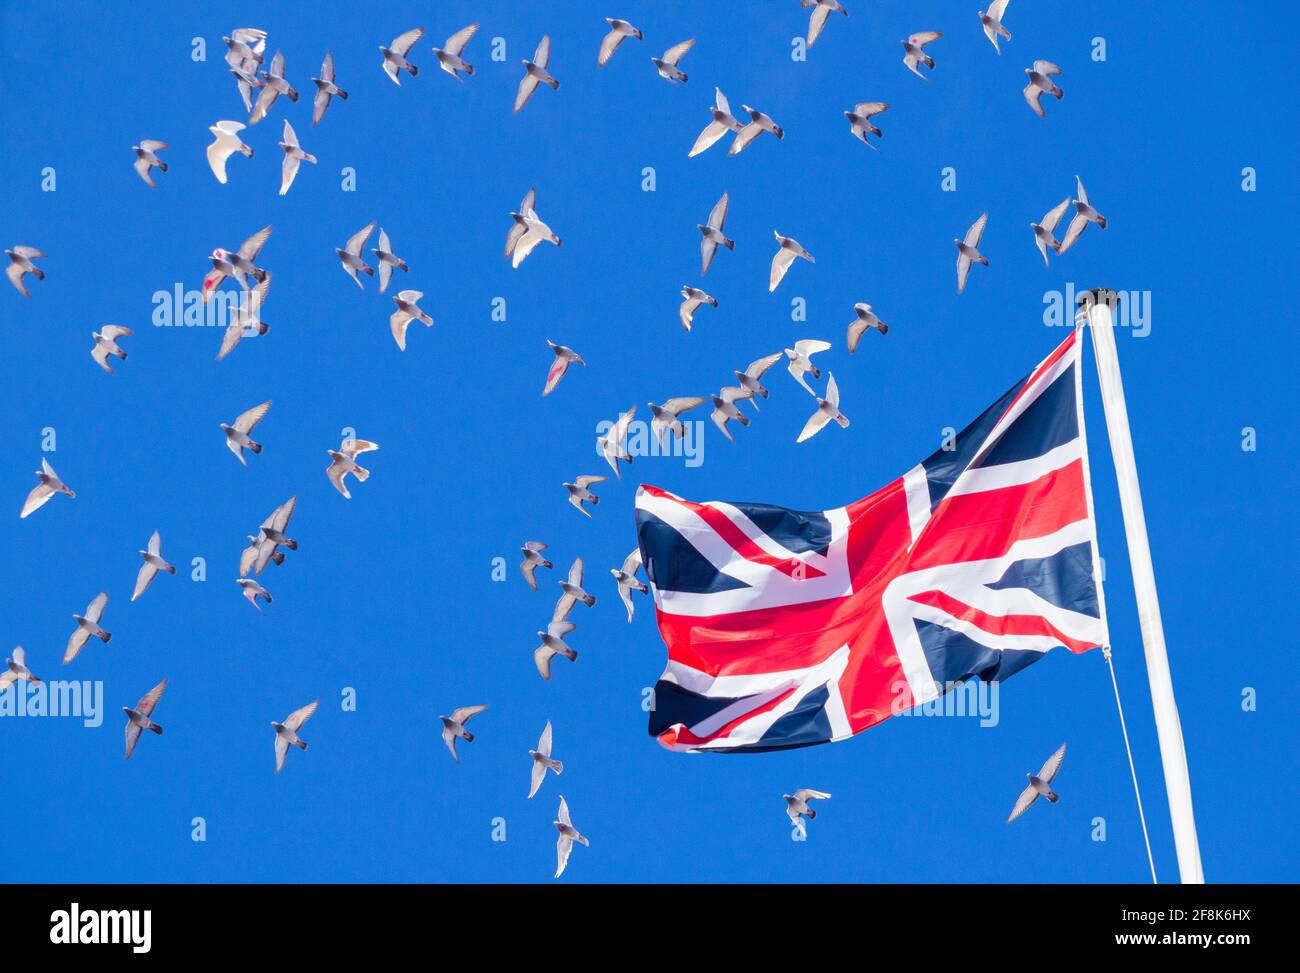 Pigeons de course au-dessus du drapeau Union Jack. Banque D'Images